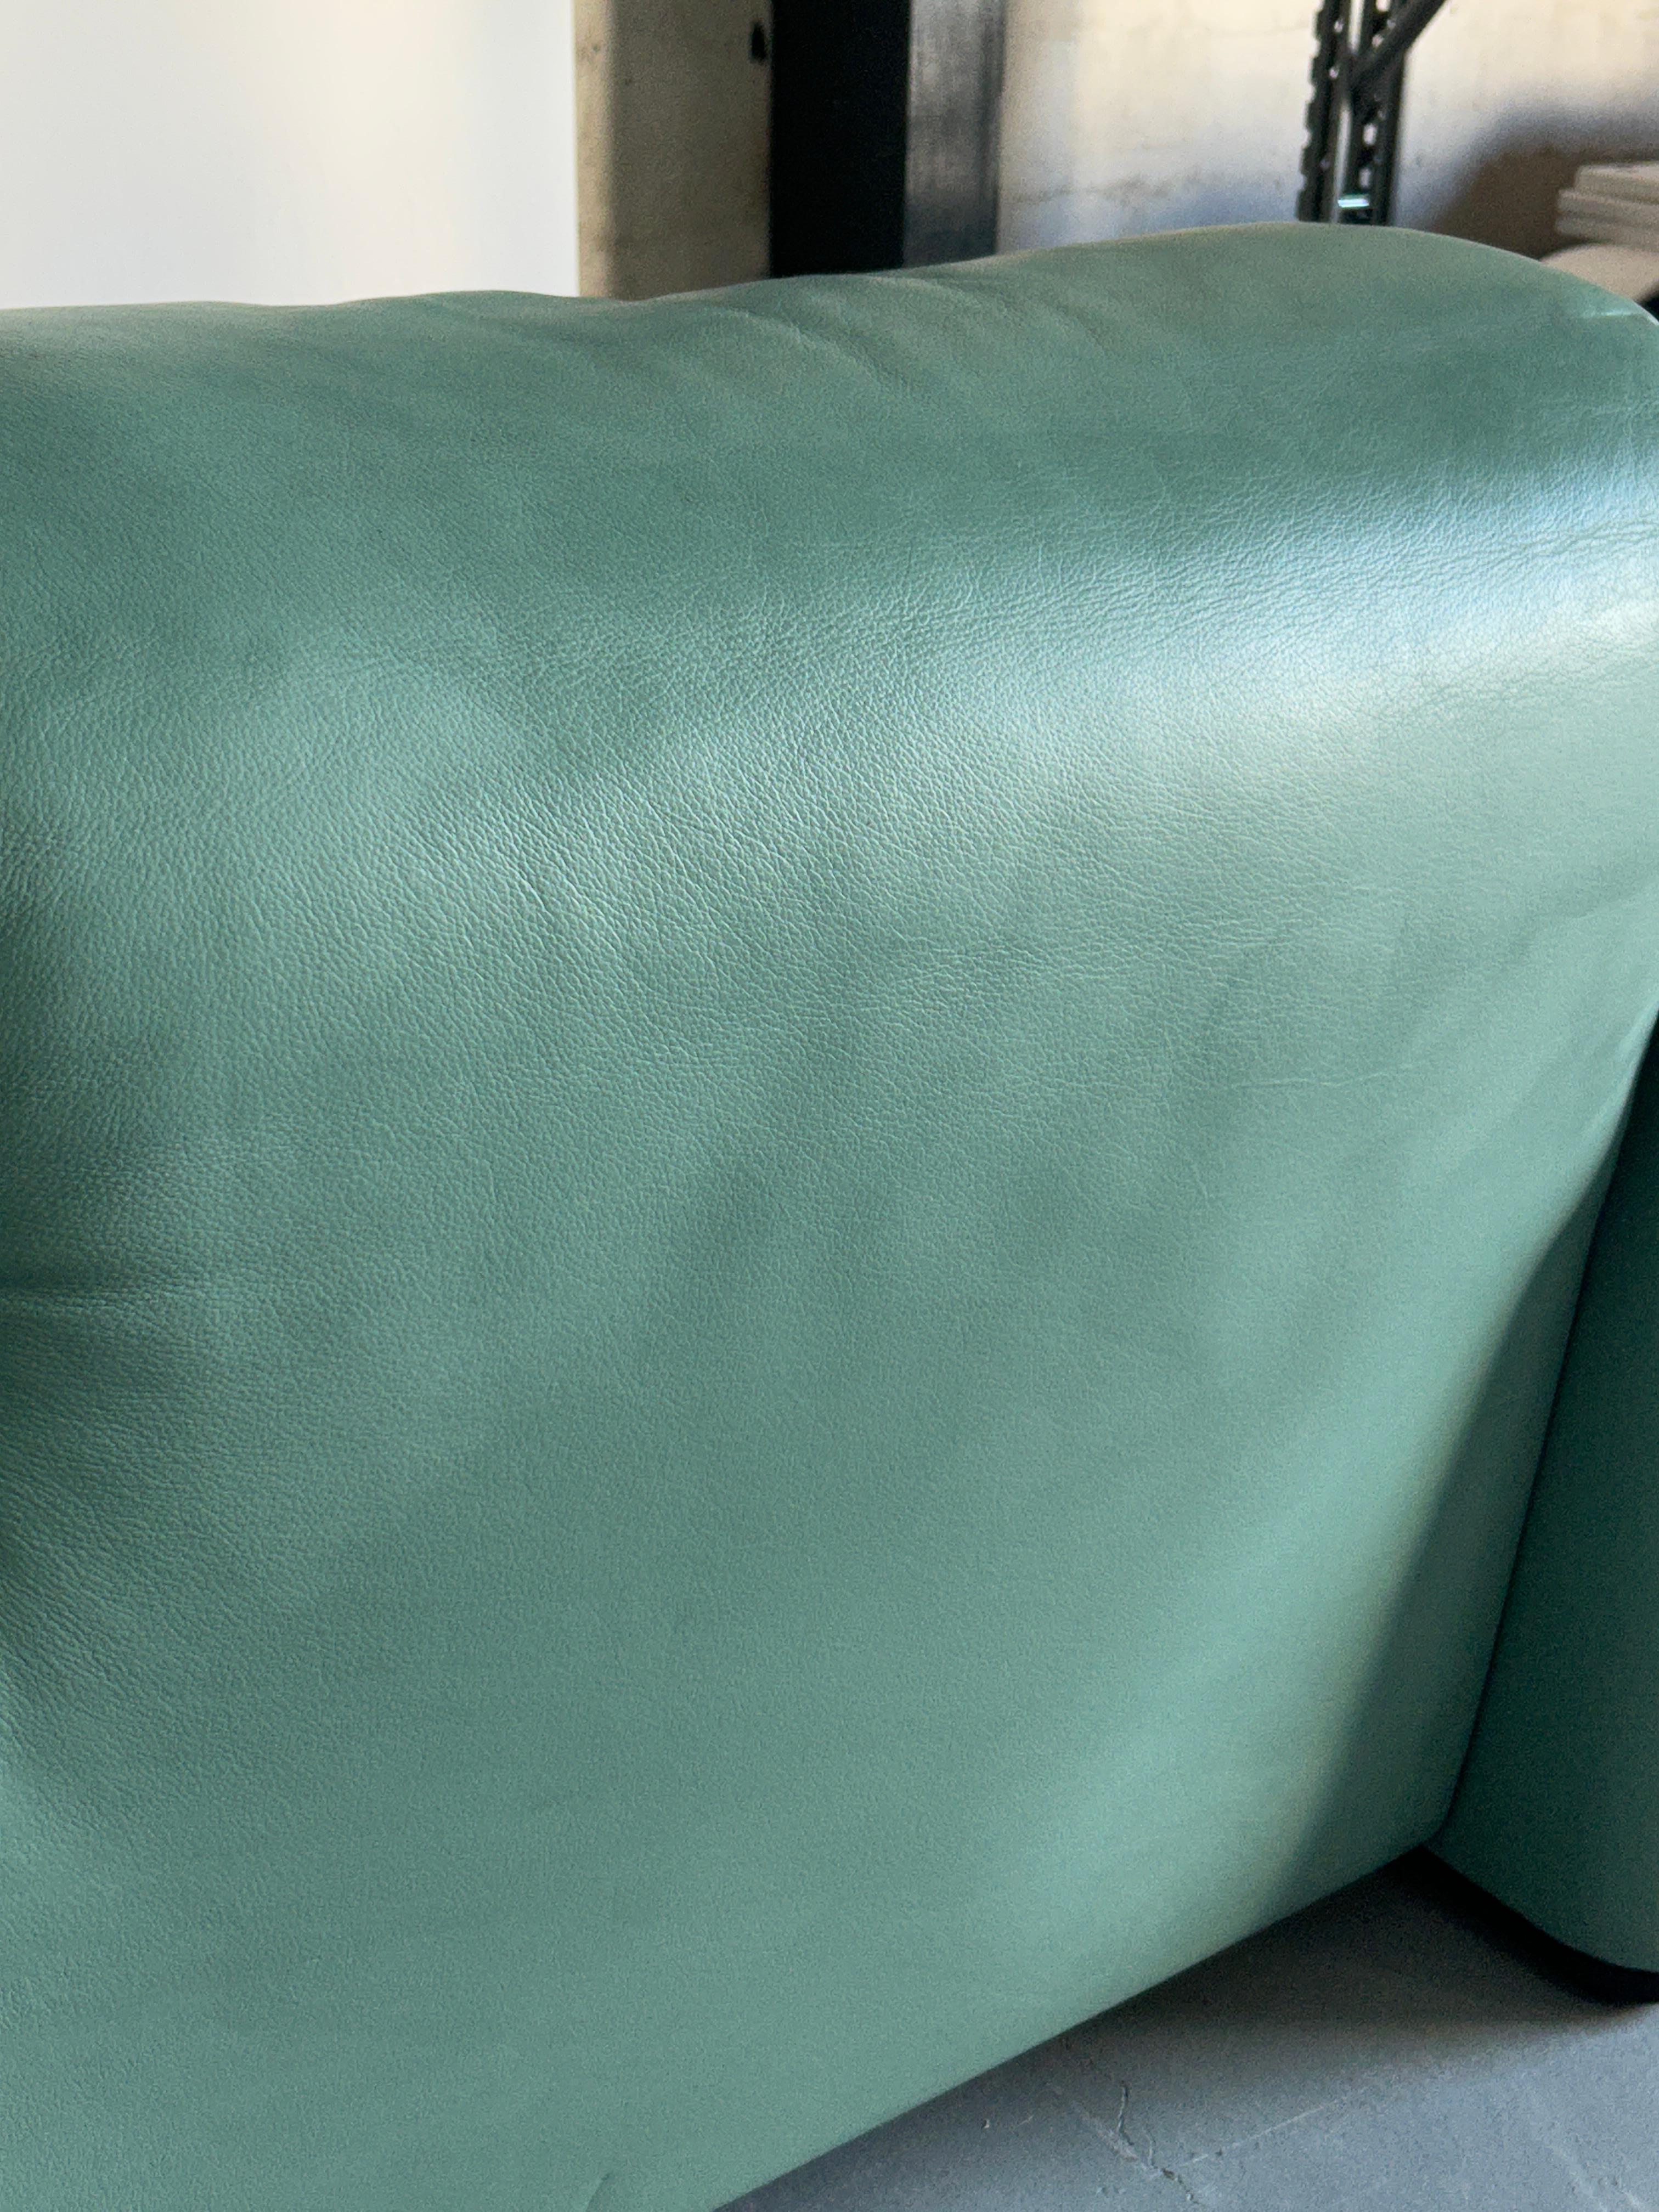  Vico Magistretti 'Maralunga' Mint Green Leather Sofa for Cassina, 1990s Italy 6